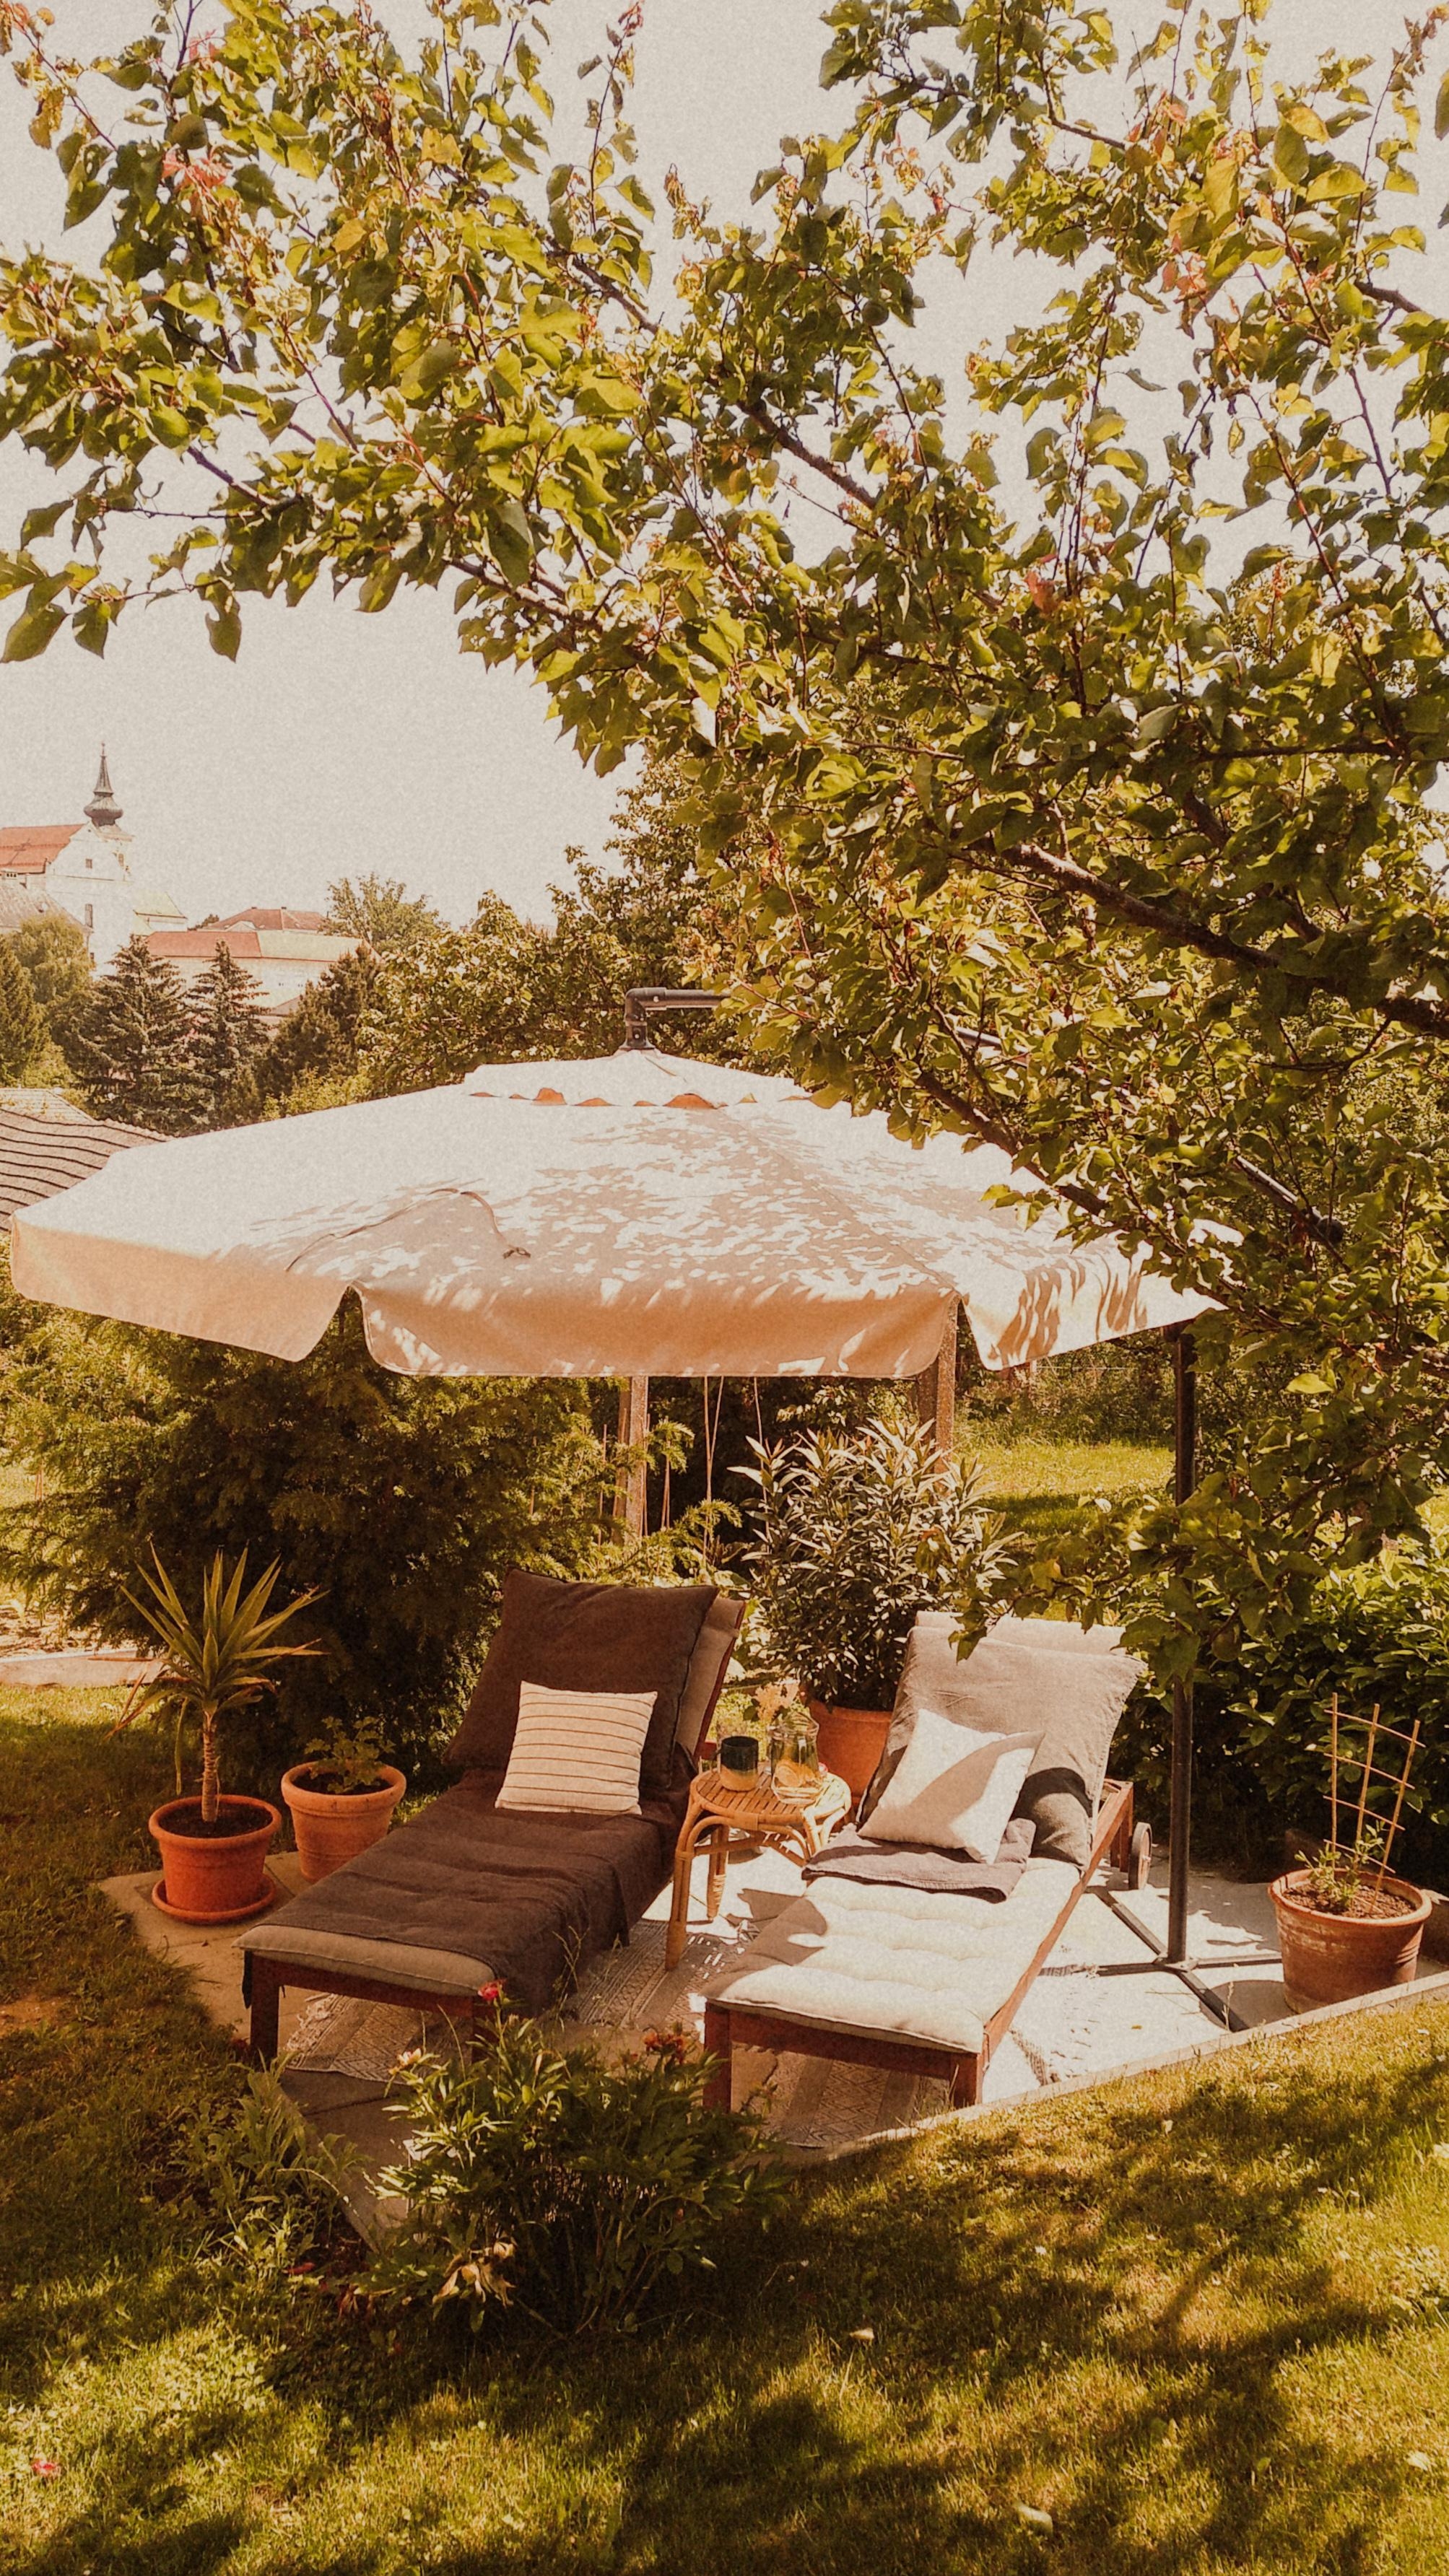 unser kleines paradies ✨✨ #paradise #garden #terrace #summer